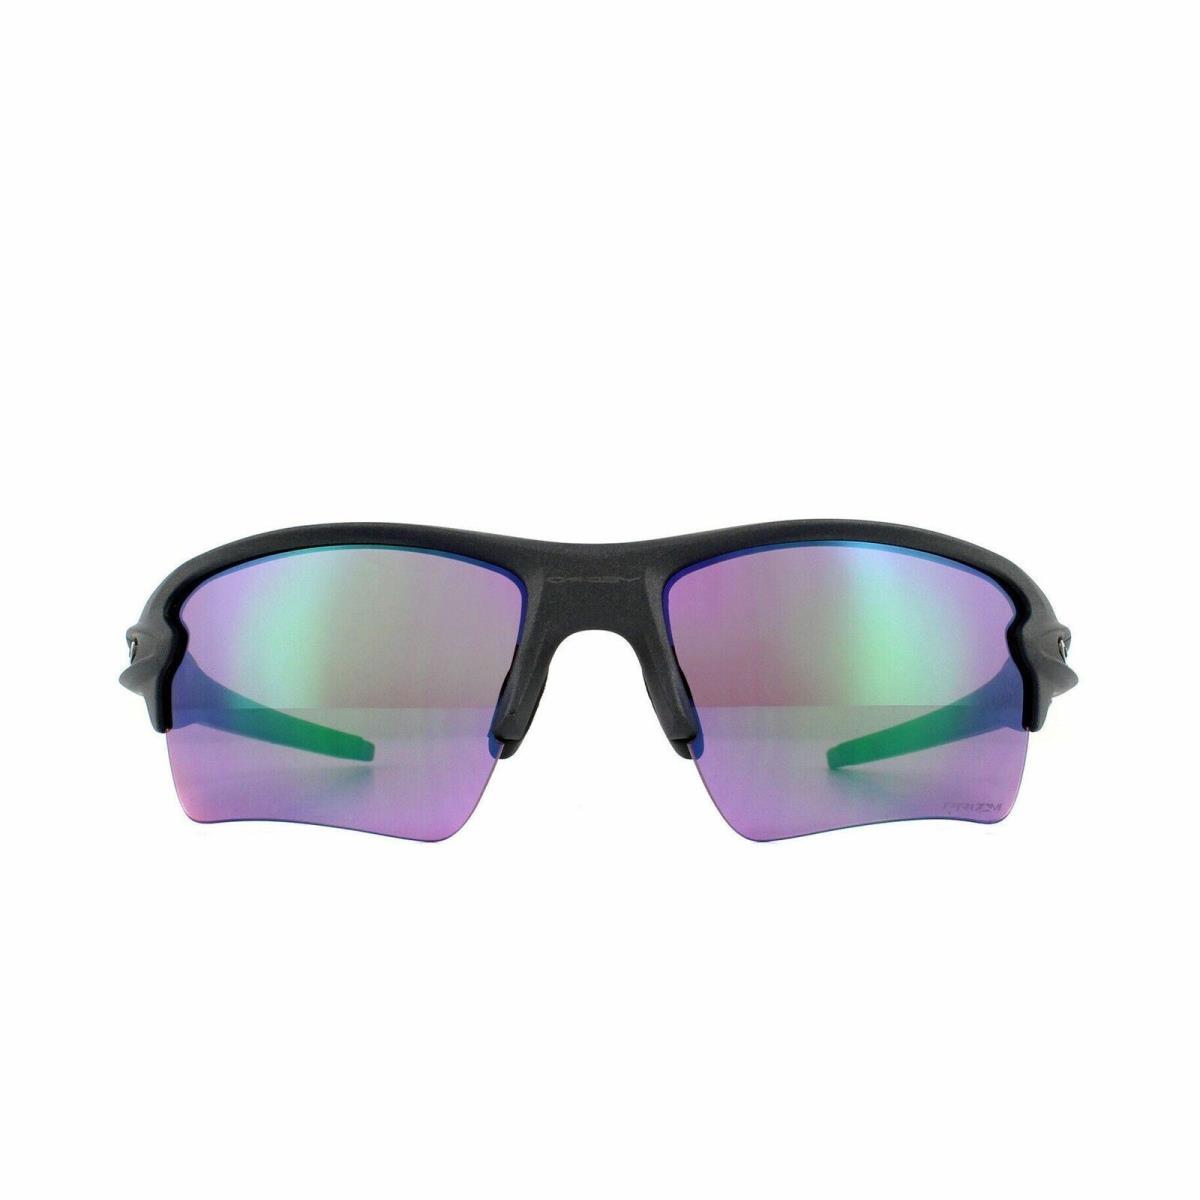 OO9188-F3 Mens Oakley Flak 2.0 XL Sunglasses - Frame: Black, Lens: Green